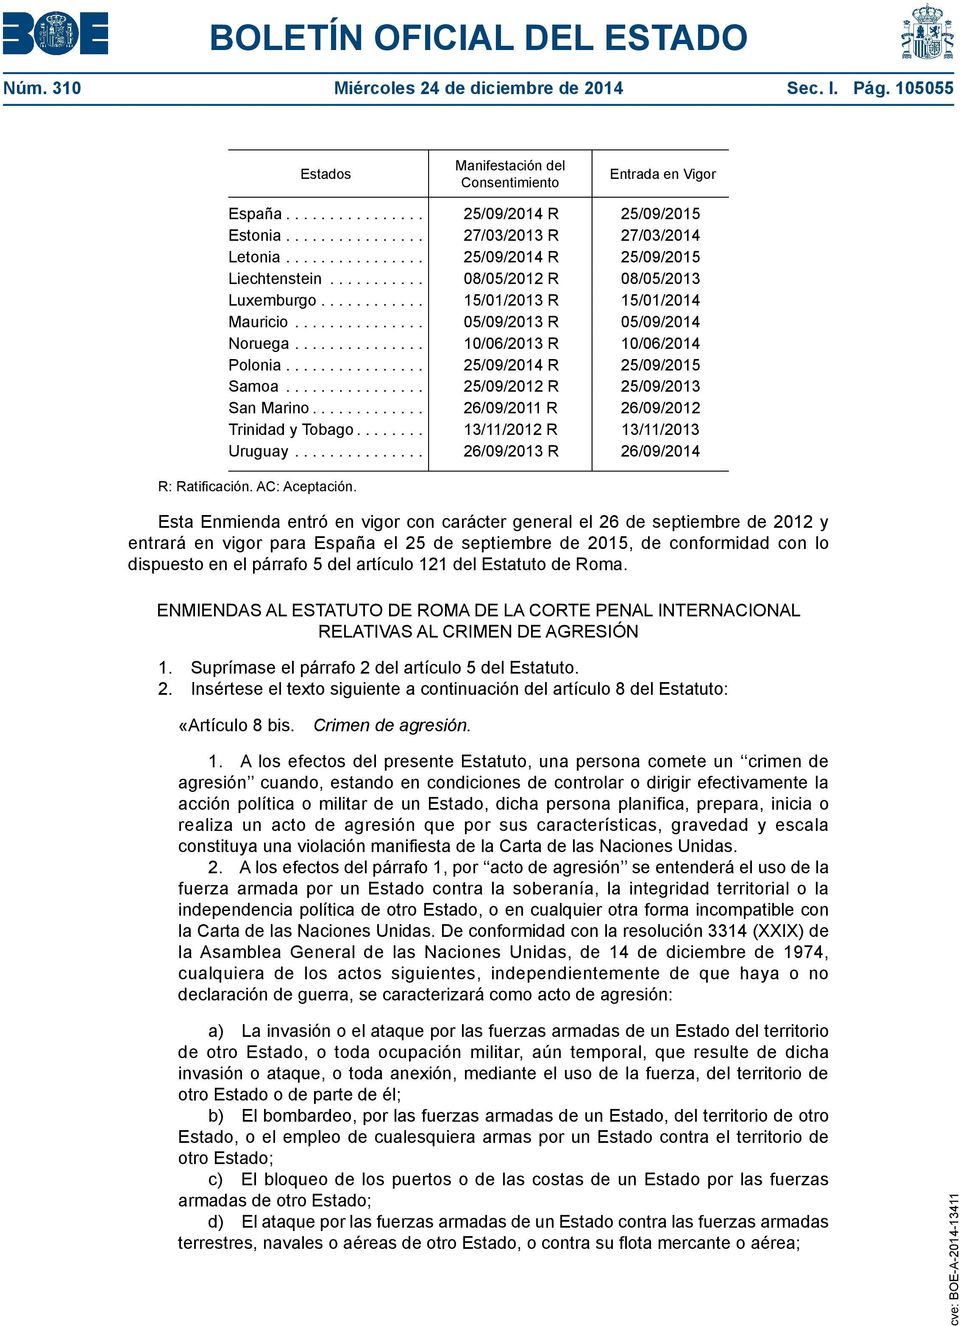 .. 25/09/2012 R 25/09/2013 San Marino... 26/09/2011 R 26/09/2012 Trinidad y Tobago... 13/11/2012 R 13/11/2013 Uruguay... 26/09/2013 R 26/09/2014 R: Ratificación. AC: Aceptación.